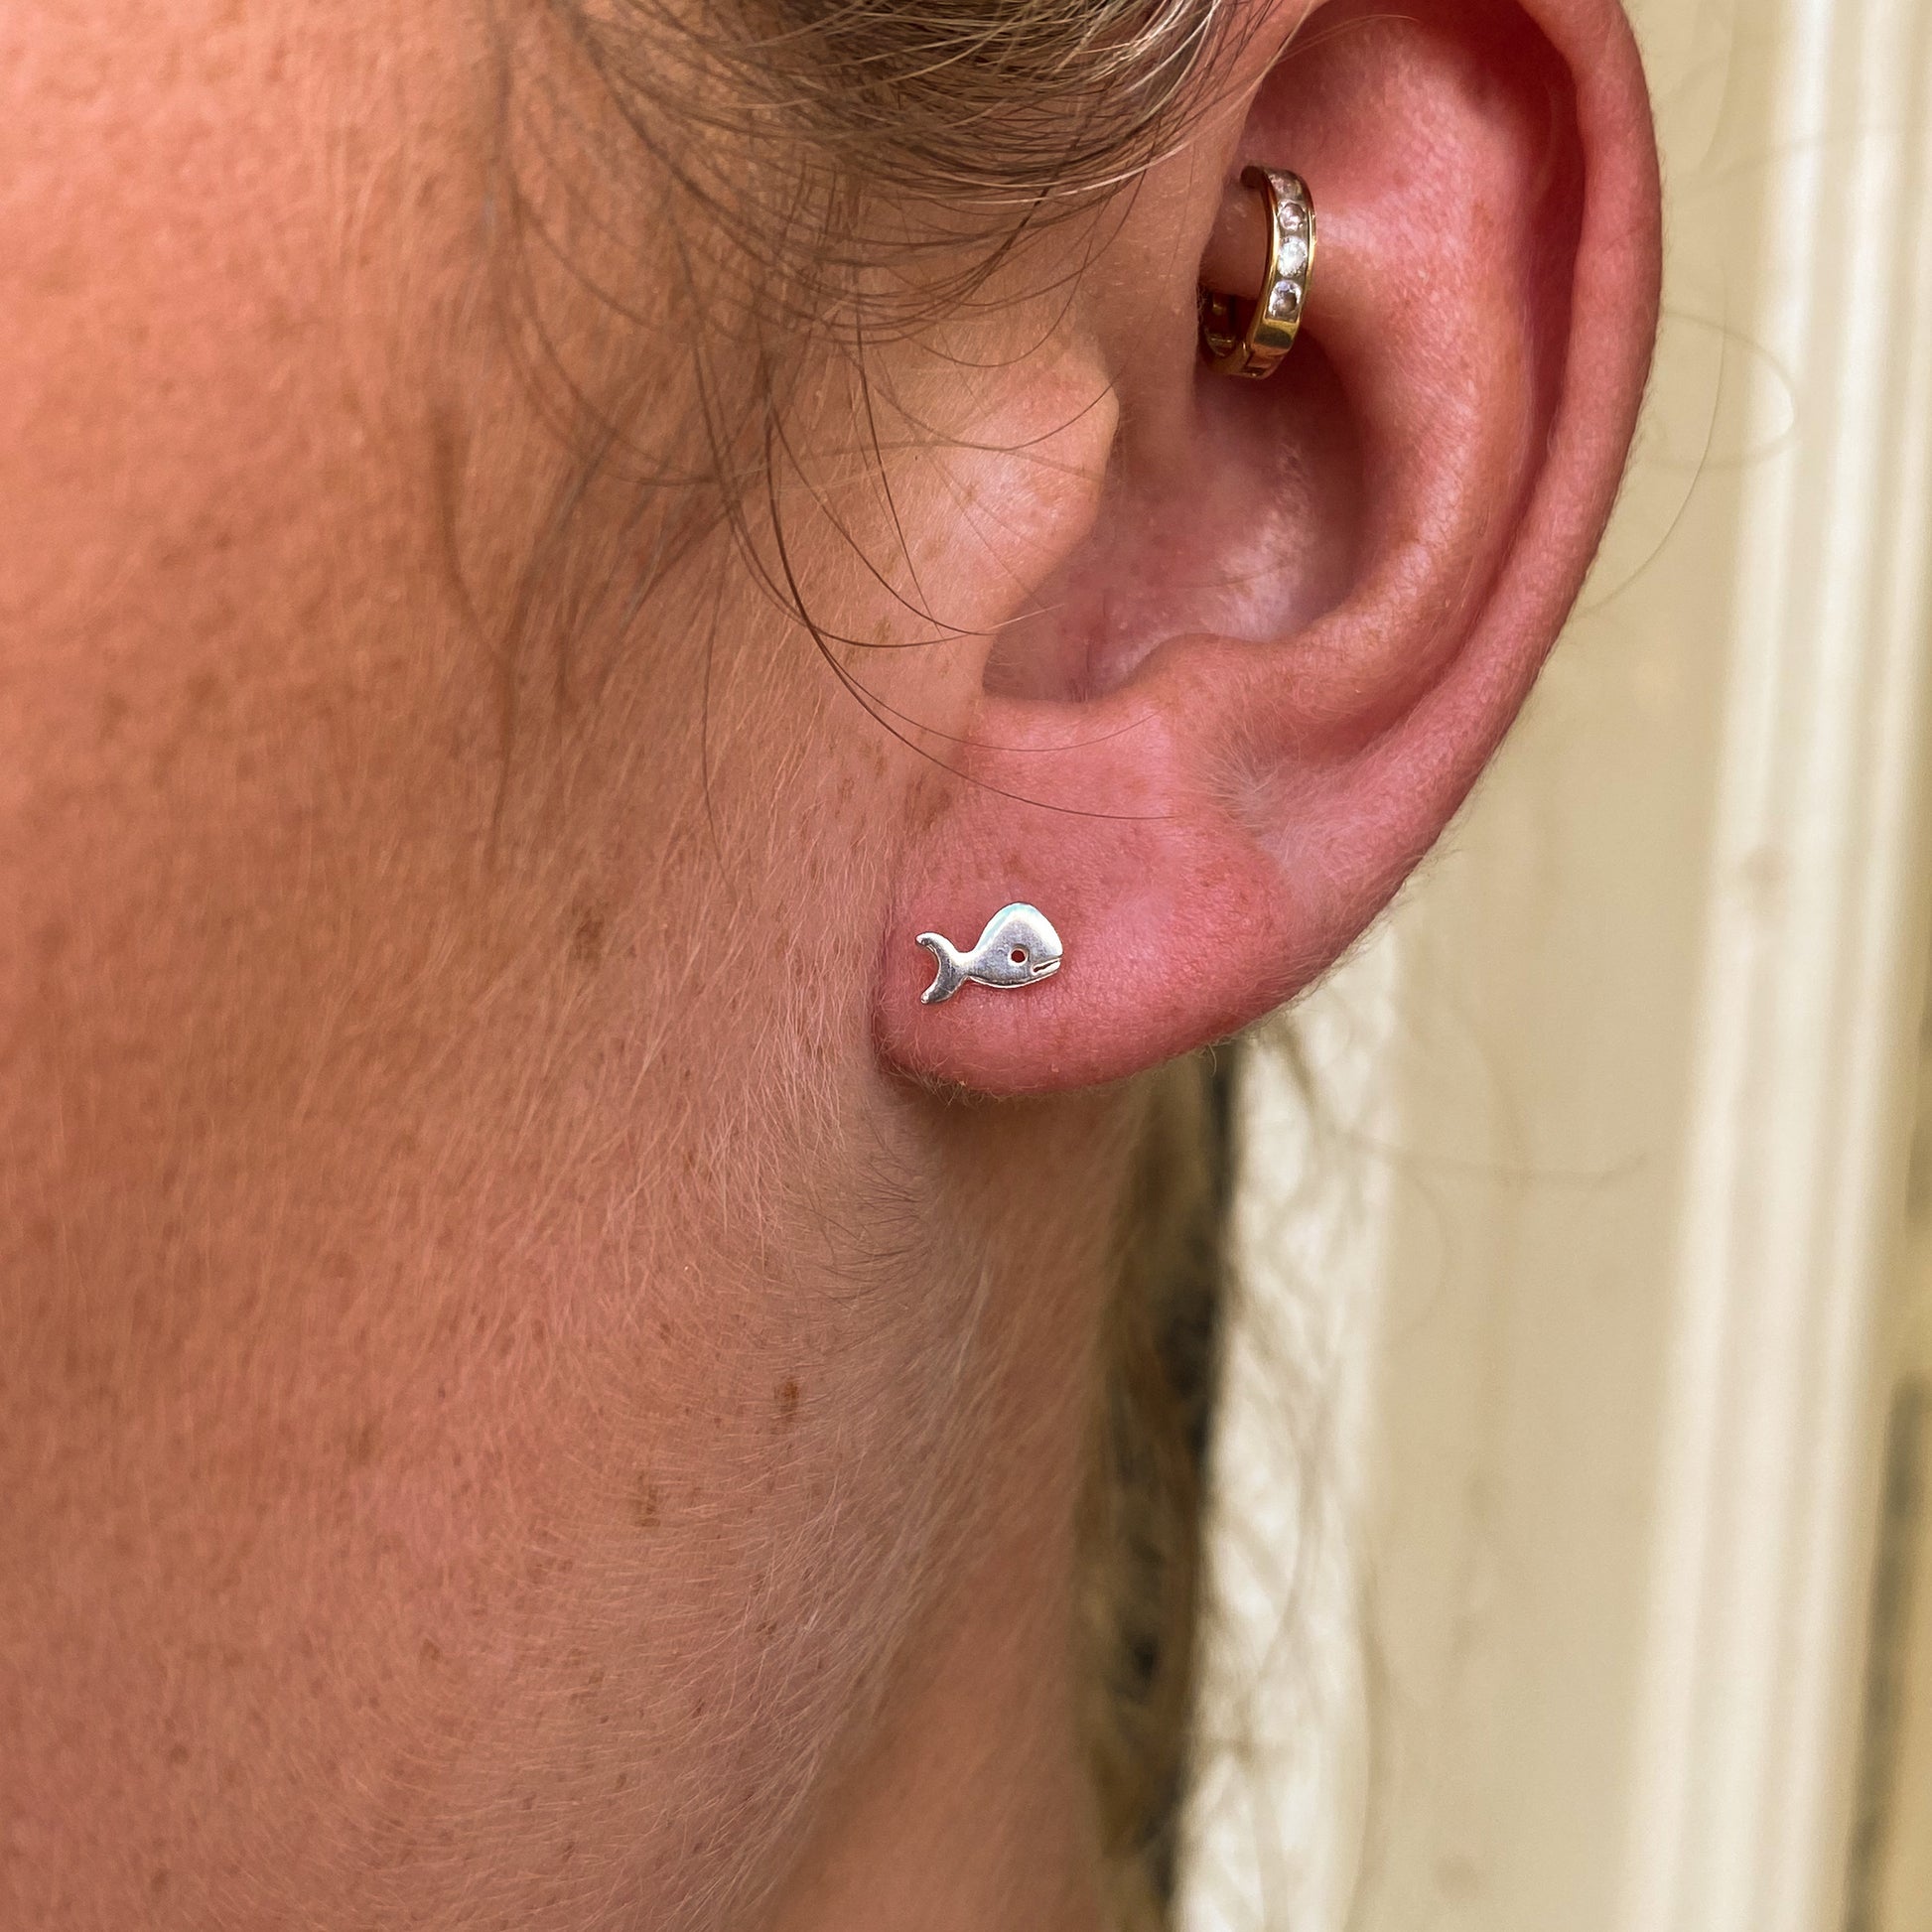 Whale Stud Earrings - John Ross Jewellers